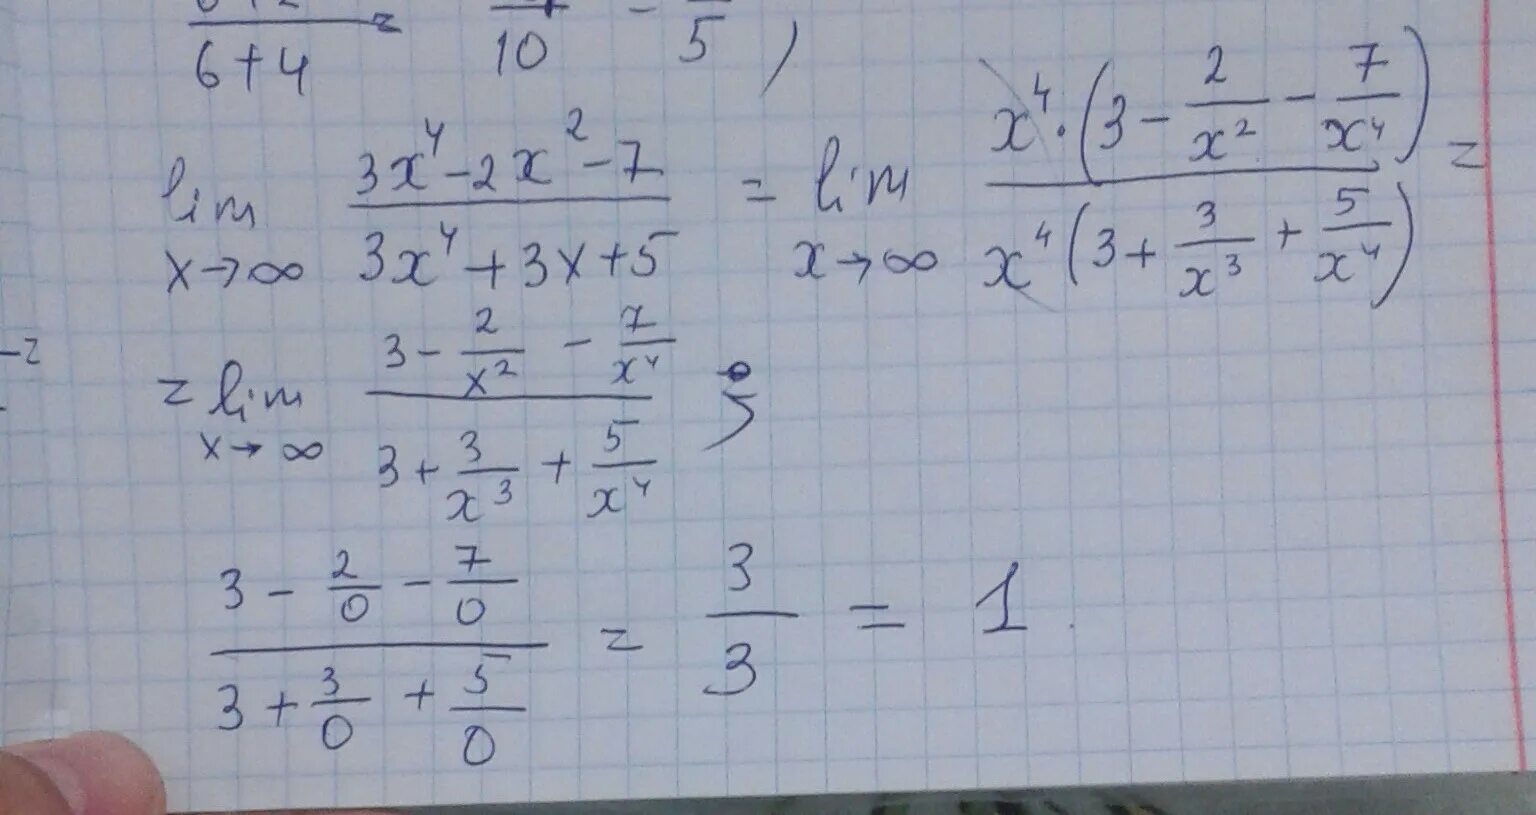 Х 3 15 2 5 ответ. Lim x стремится к бесконечности 2/x 2+3x. Lim x стремится к бесконечности x^2-4x+3/x+5. Lim x стремиться к бесконечности ( 2x/2x-3)^3x. Lim x стремится к бесконечности 3+x-5x4.